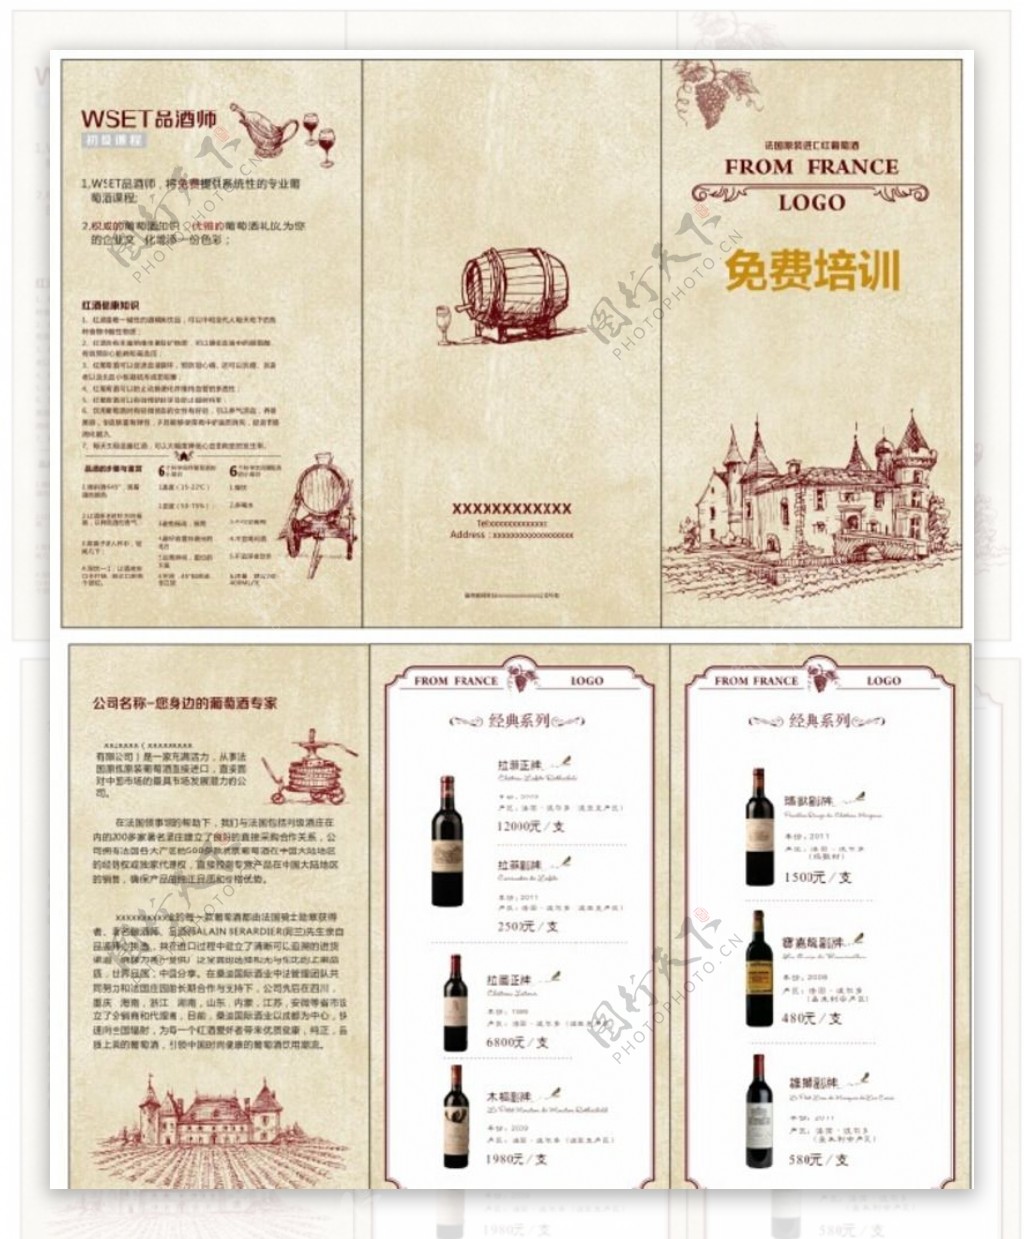 红酒宣传折页图片